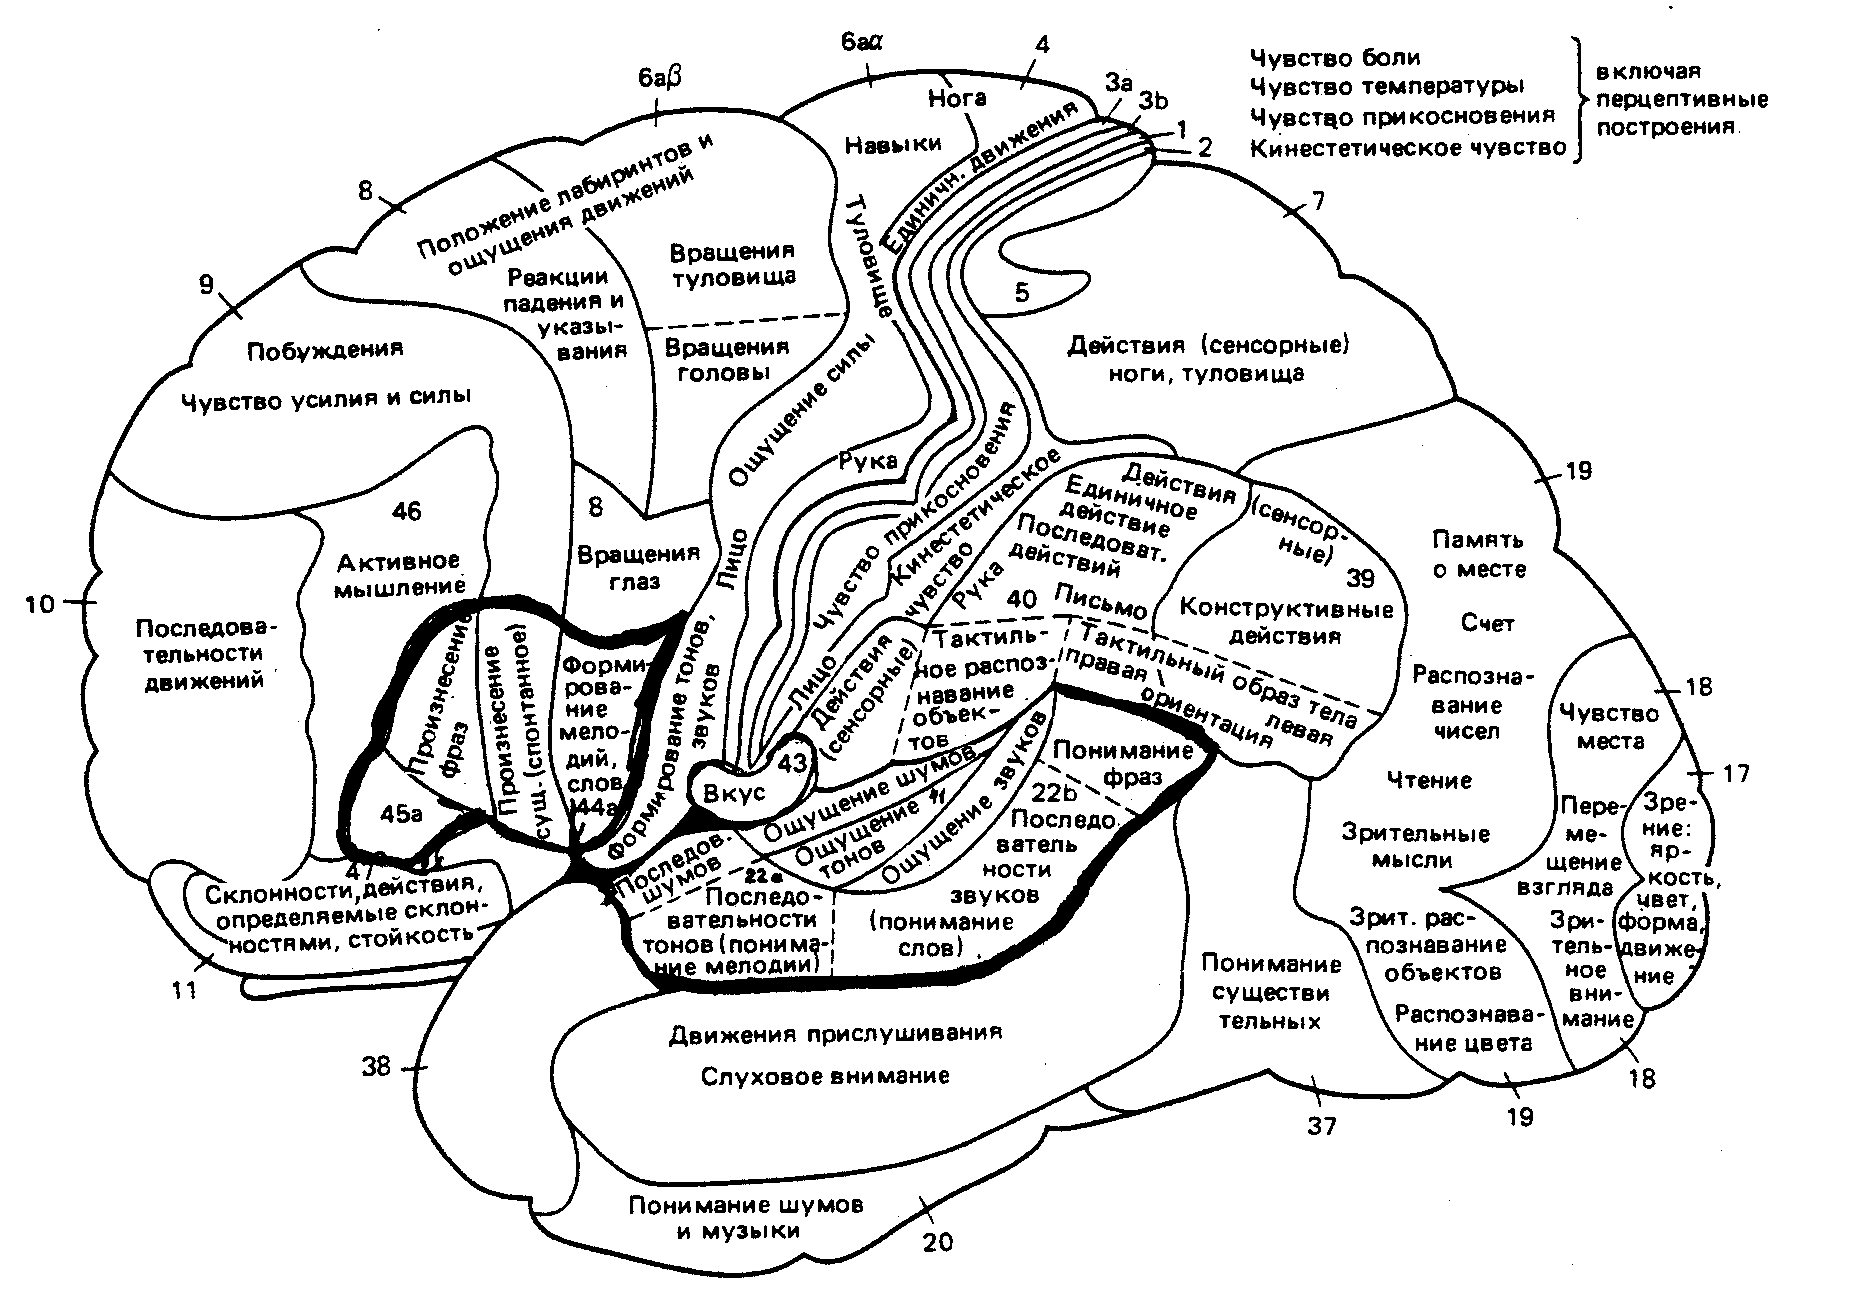 Карта полушарий мозга поля по Бродману. Карта локализации функций в коре головного мозга по Бродману. Карта полей головного мозга по Бродману. Карта цитоархитектонических полей коры головного мозга Бродмана.